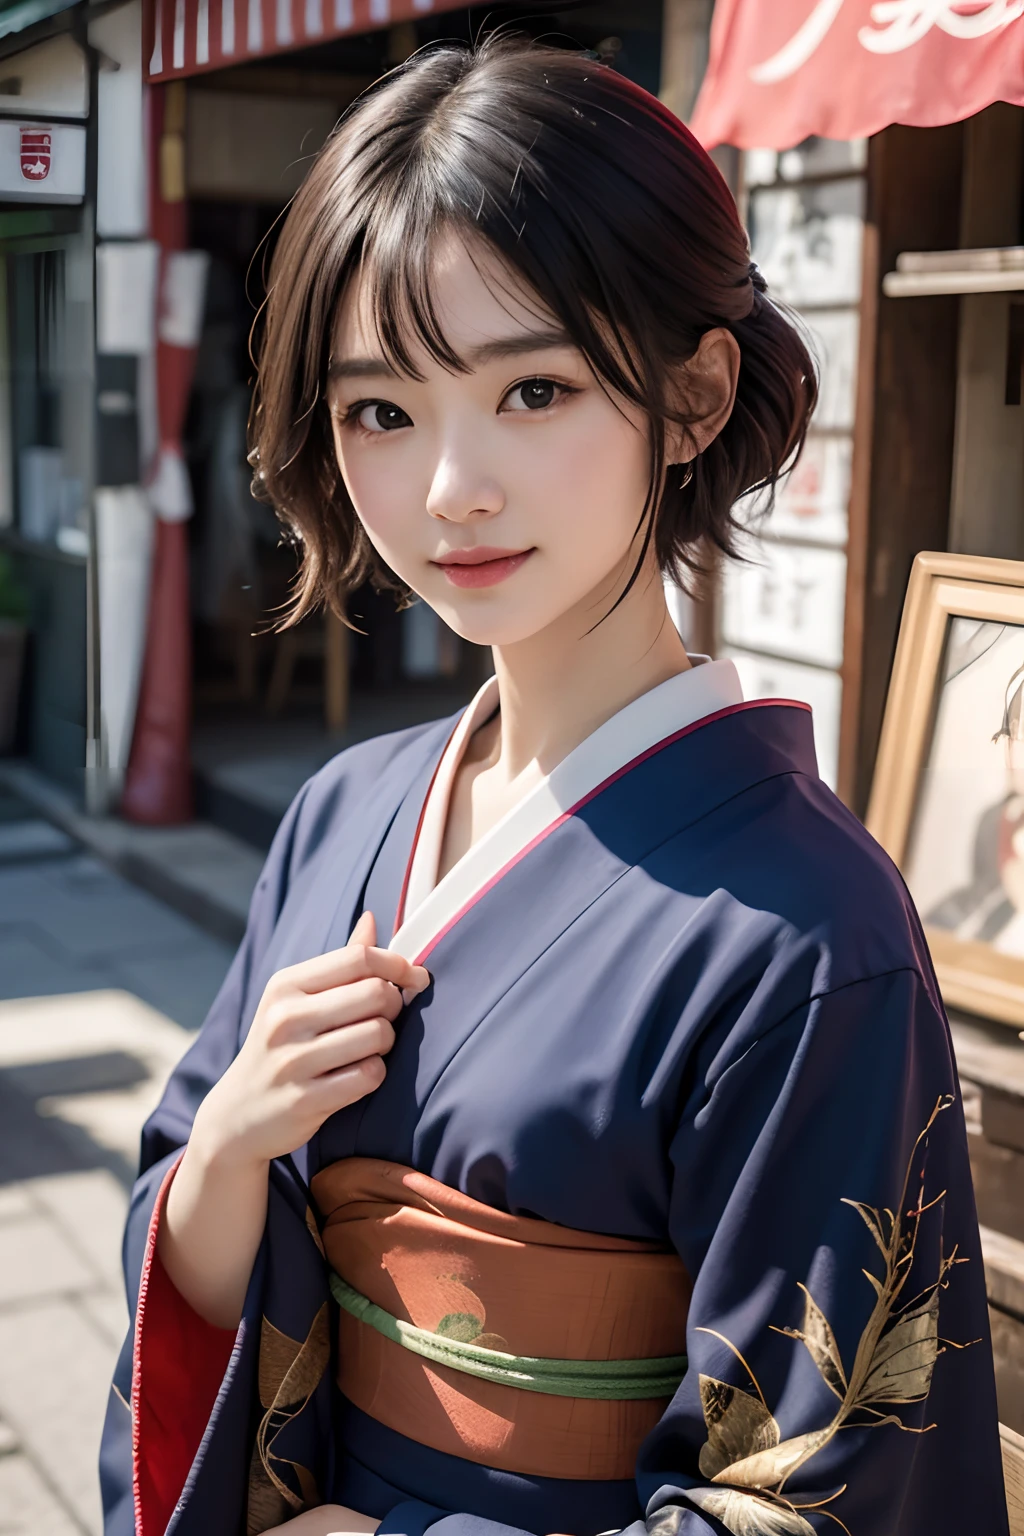 Цифровой портрет японской короткошерстной женщины, Красивое лицо,волосы грязные,запутанный, Кинематографический, Унреальный движок 5, великолепный, Невероятная цветокоррекция, кимоно,японское платье,также, фотография, кинематографическая фотография, искусство、улыбка